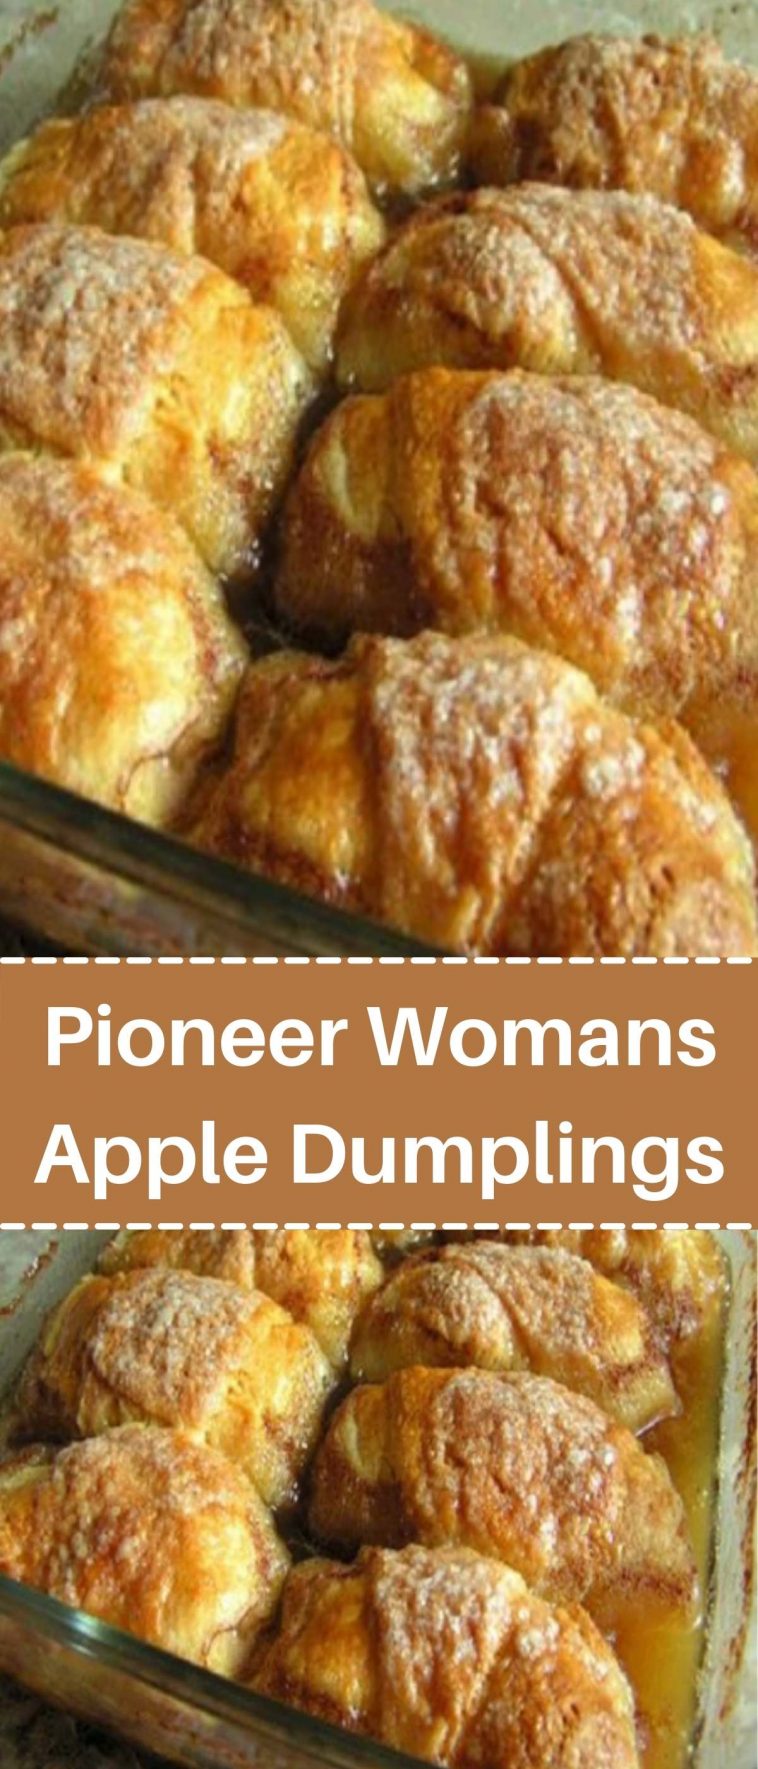 Pioneer Womans Apple Dumplings